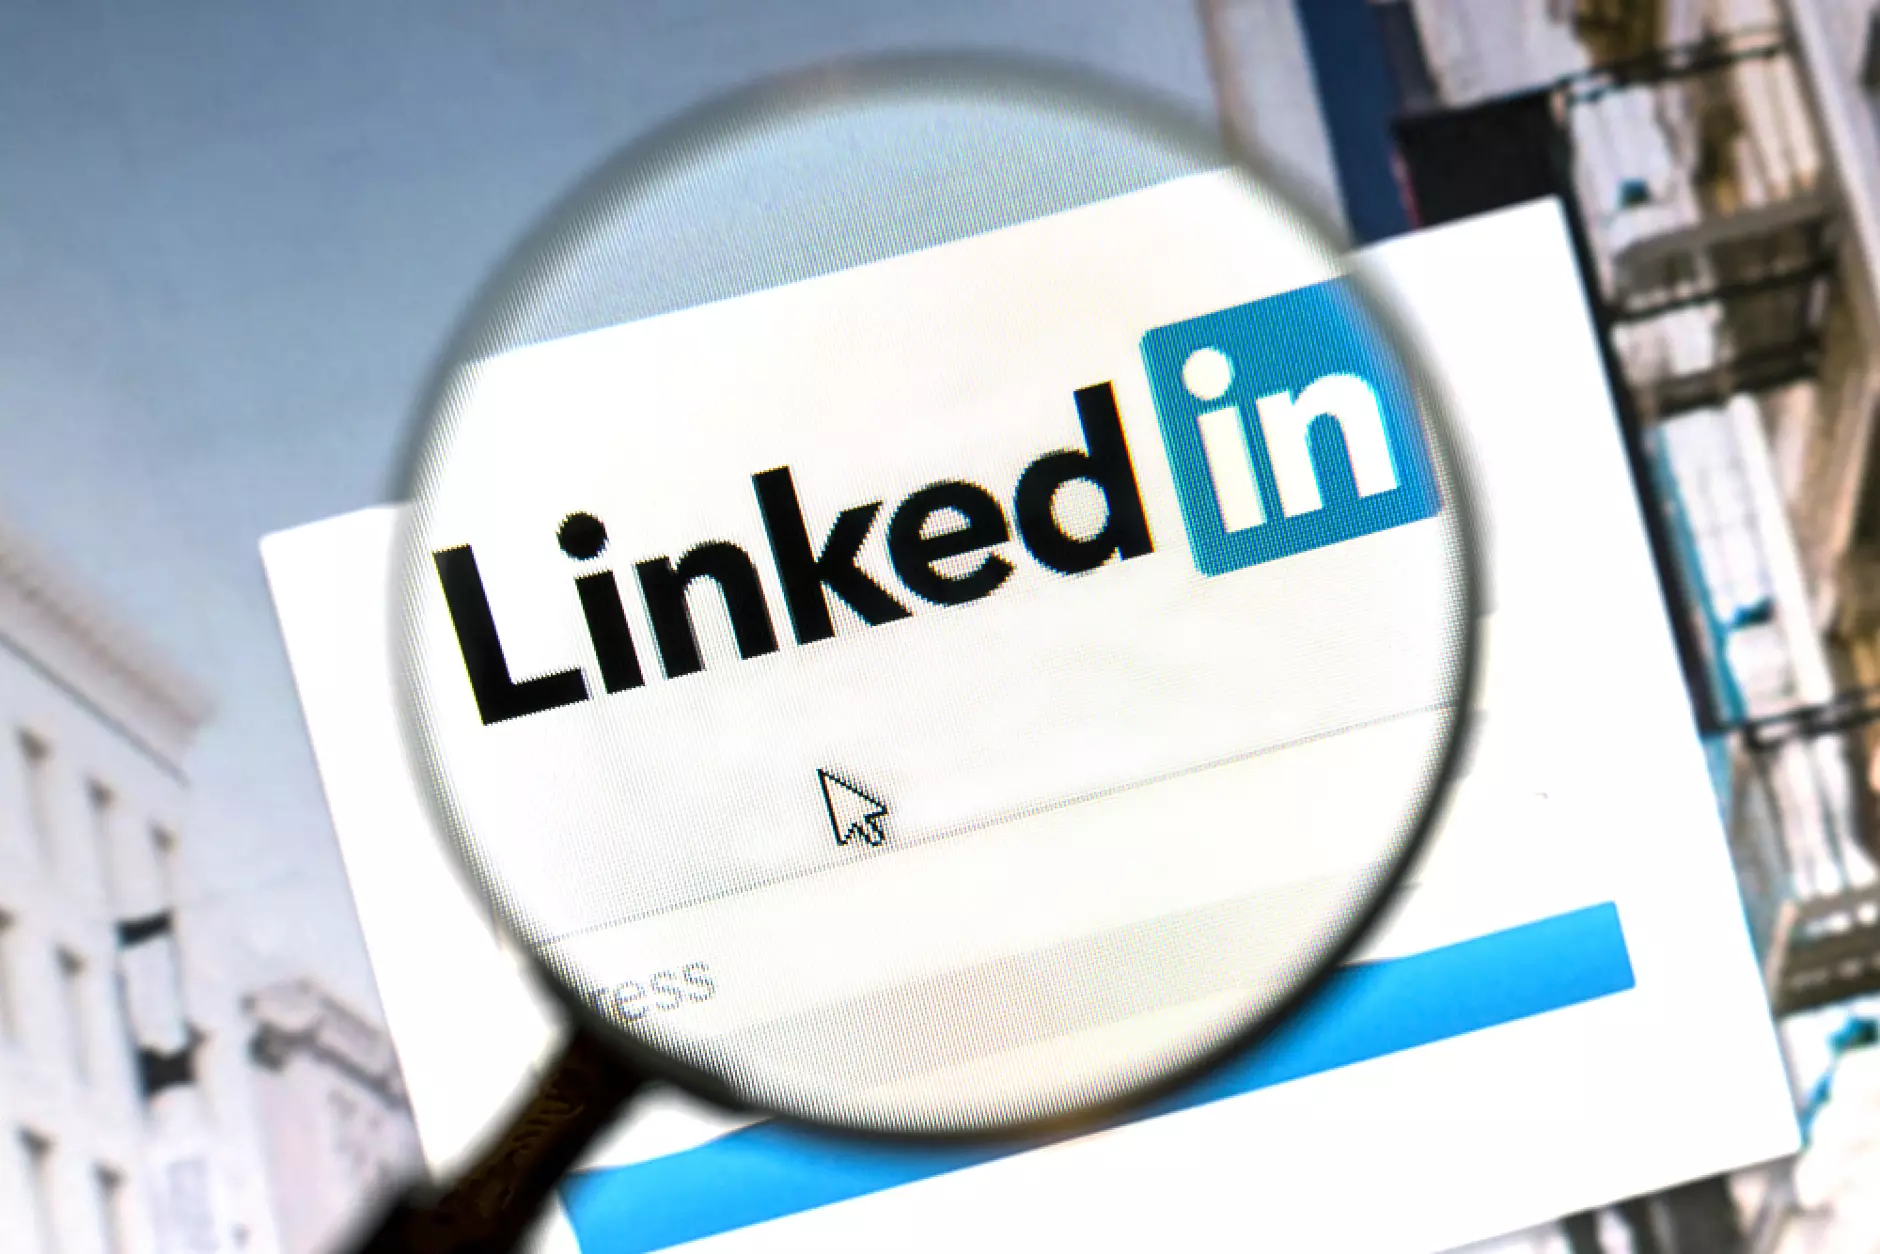 5-те вида съдържание, които работят най-добре в LinkedIn (Инфографика)